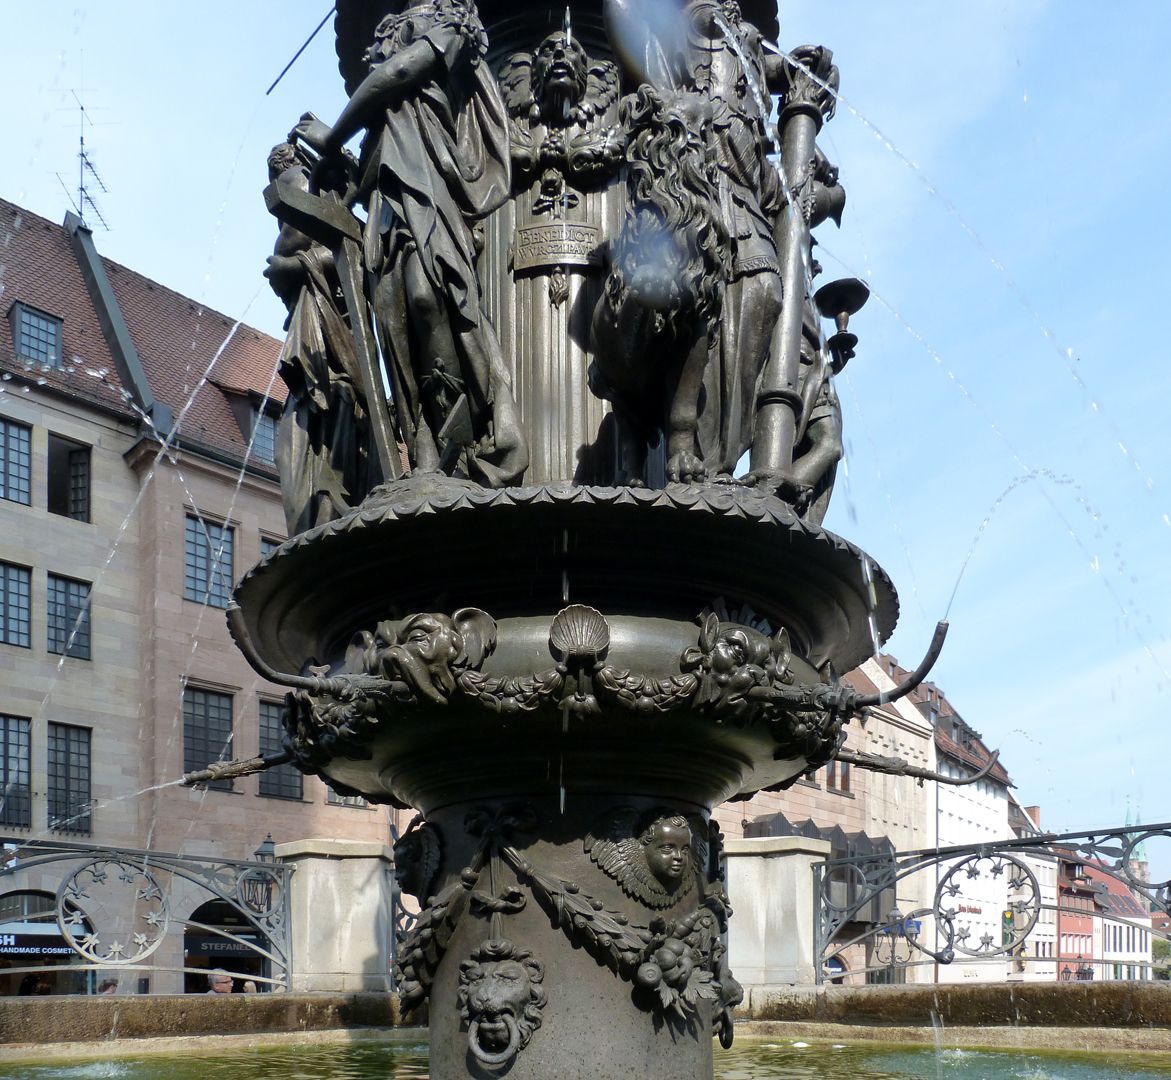 Tugendbrunnen Der Schaft des Pfeilers geschmückt mit Girlanden, Engelsköpfen, Muscheln und Masken.